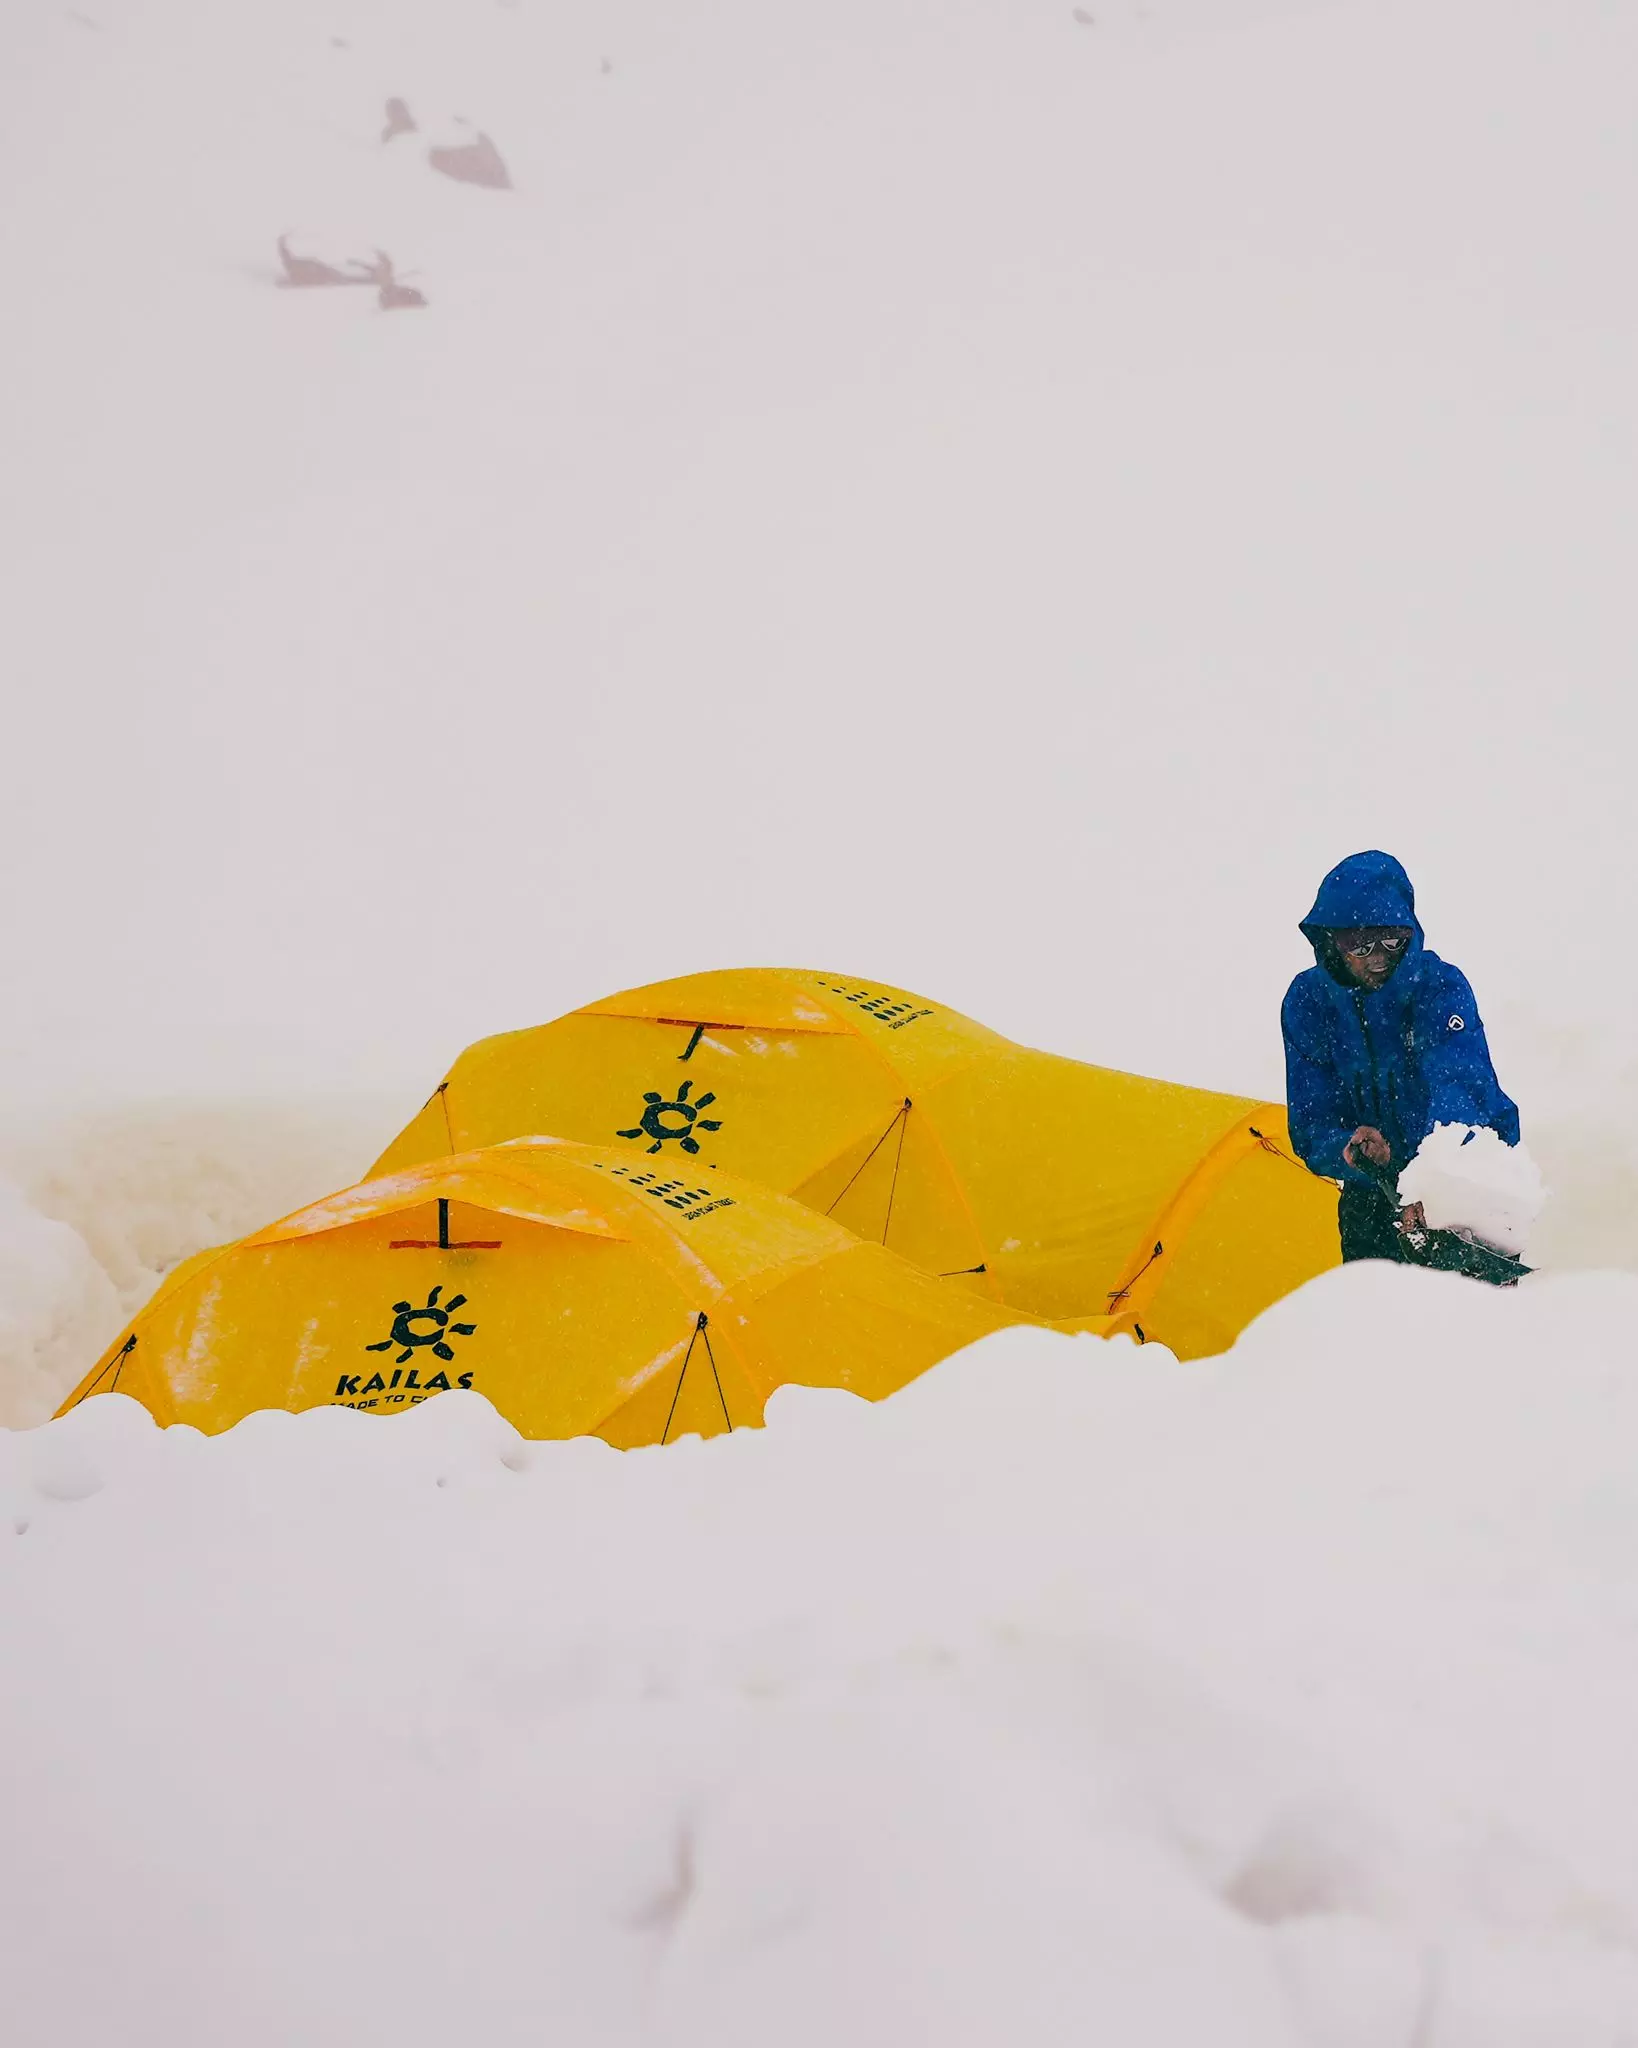 Бартек Жемскі (Bartek Ziemski) відкопує намет у базовому таборі Дхалагірі. Фото MAD Ski Project 